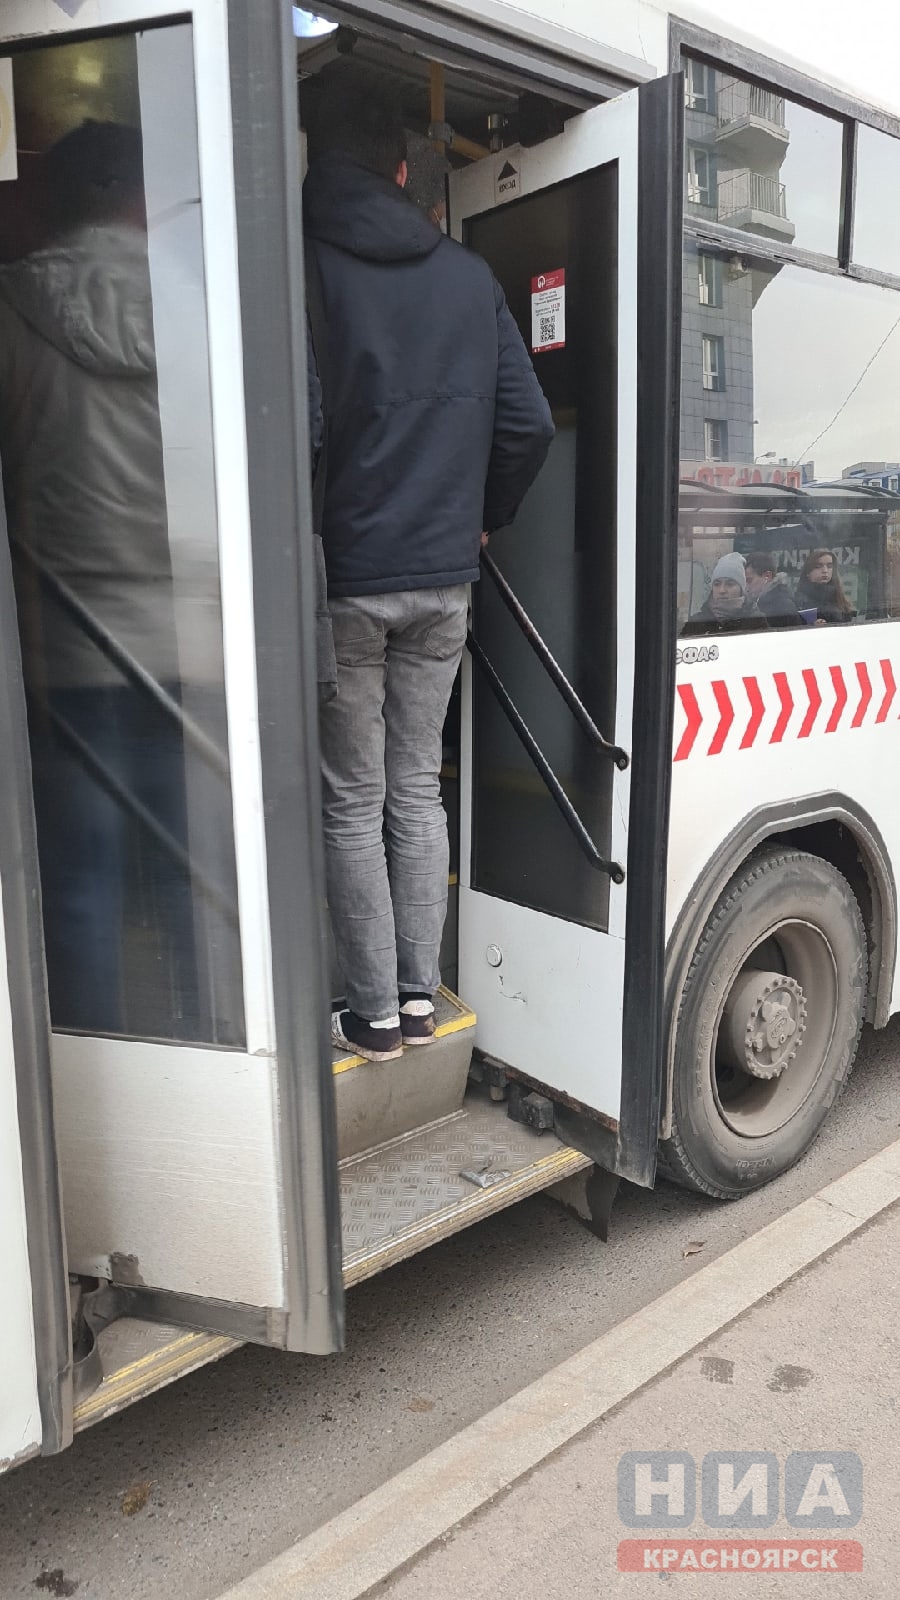 Красноярцы жалуются на переполненные автобусы во время роста заболеваемости COVID-19